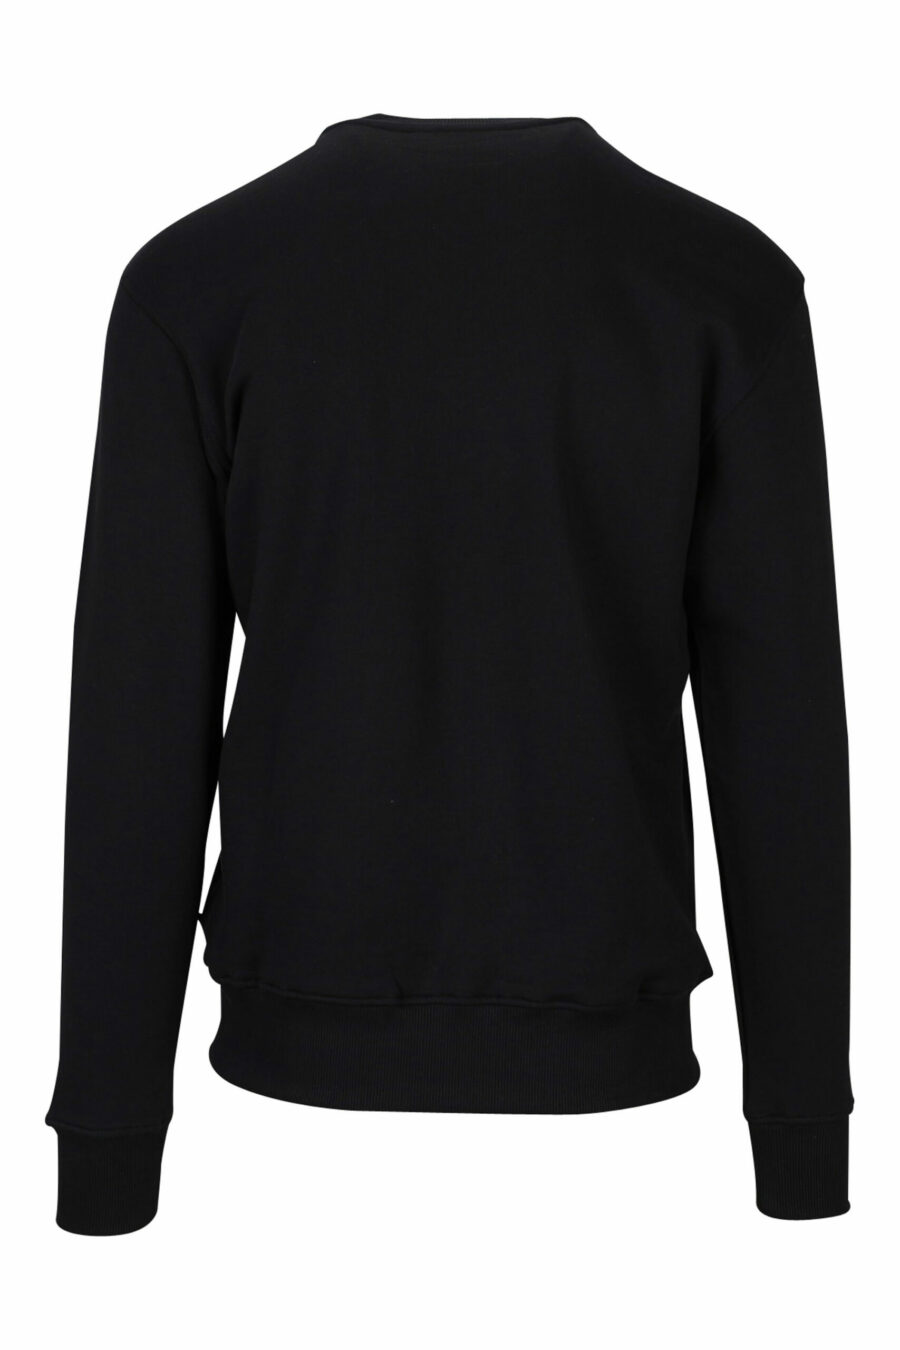 Schwarzes Sweatshirt mit "spry" Grafik maxilogo - 8052019469837 1 skaliert